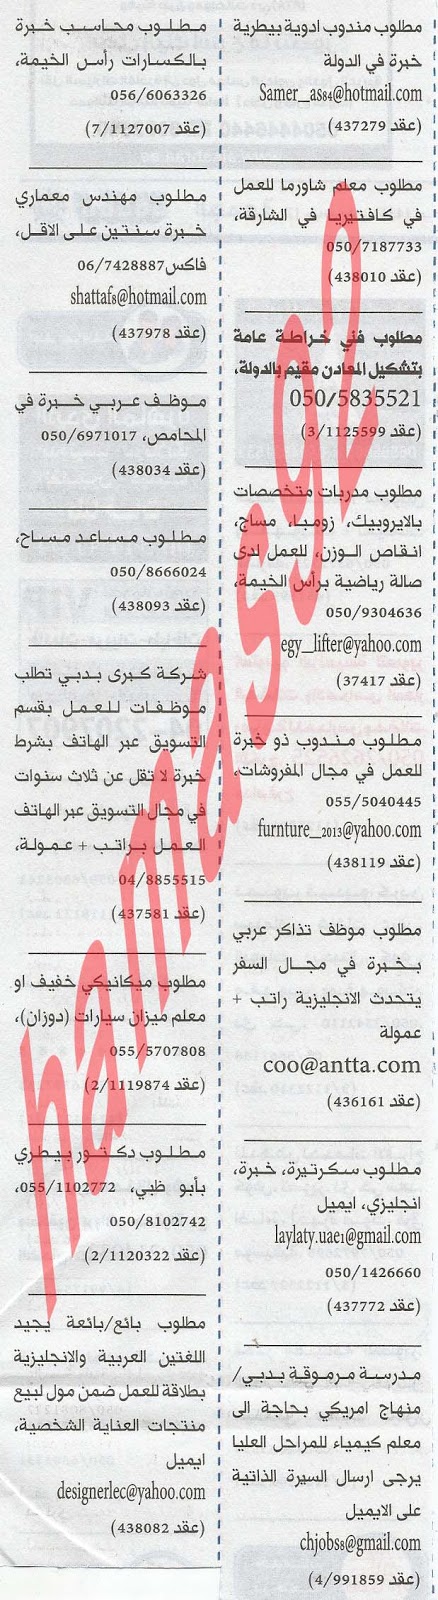 وظائف شاغرة من جريدة الخليج الاماراتية اليوم الاحد 31/3/2013 %D8%A7%D9%84%D8%AE%D9%84%D9%8A%D8%AC+2